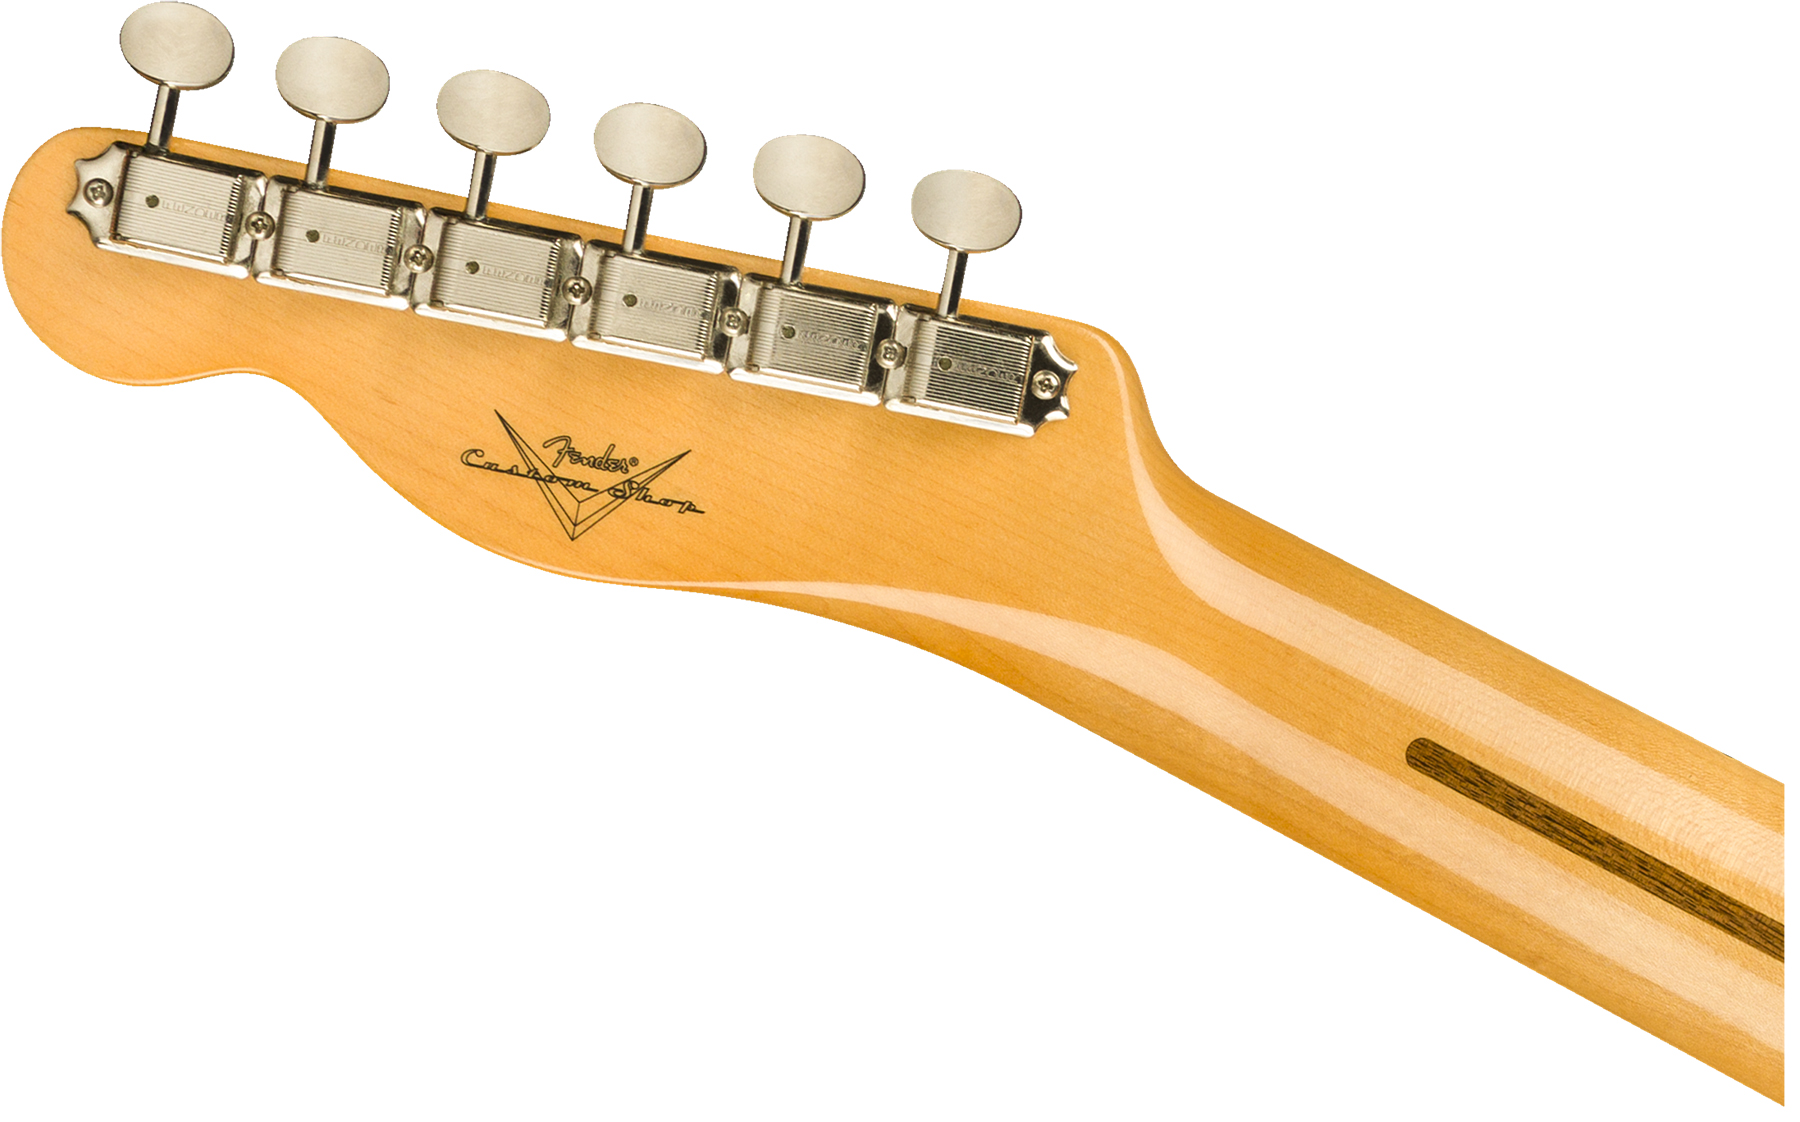 Fender Custom Shop Tele Vintage Custom 1958 Top Load Ltd Mn - Nos Aged White Blonde - Tel shape electric guitar - Variation 3